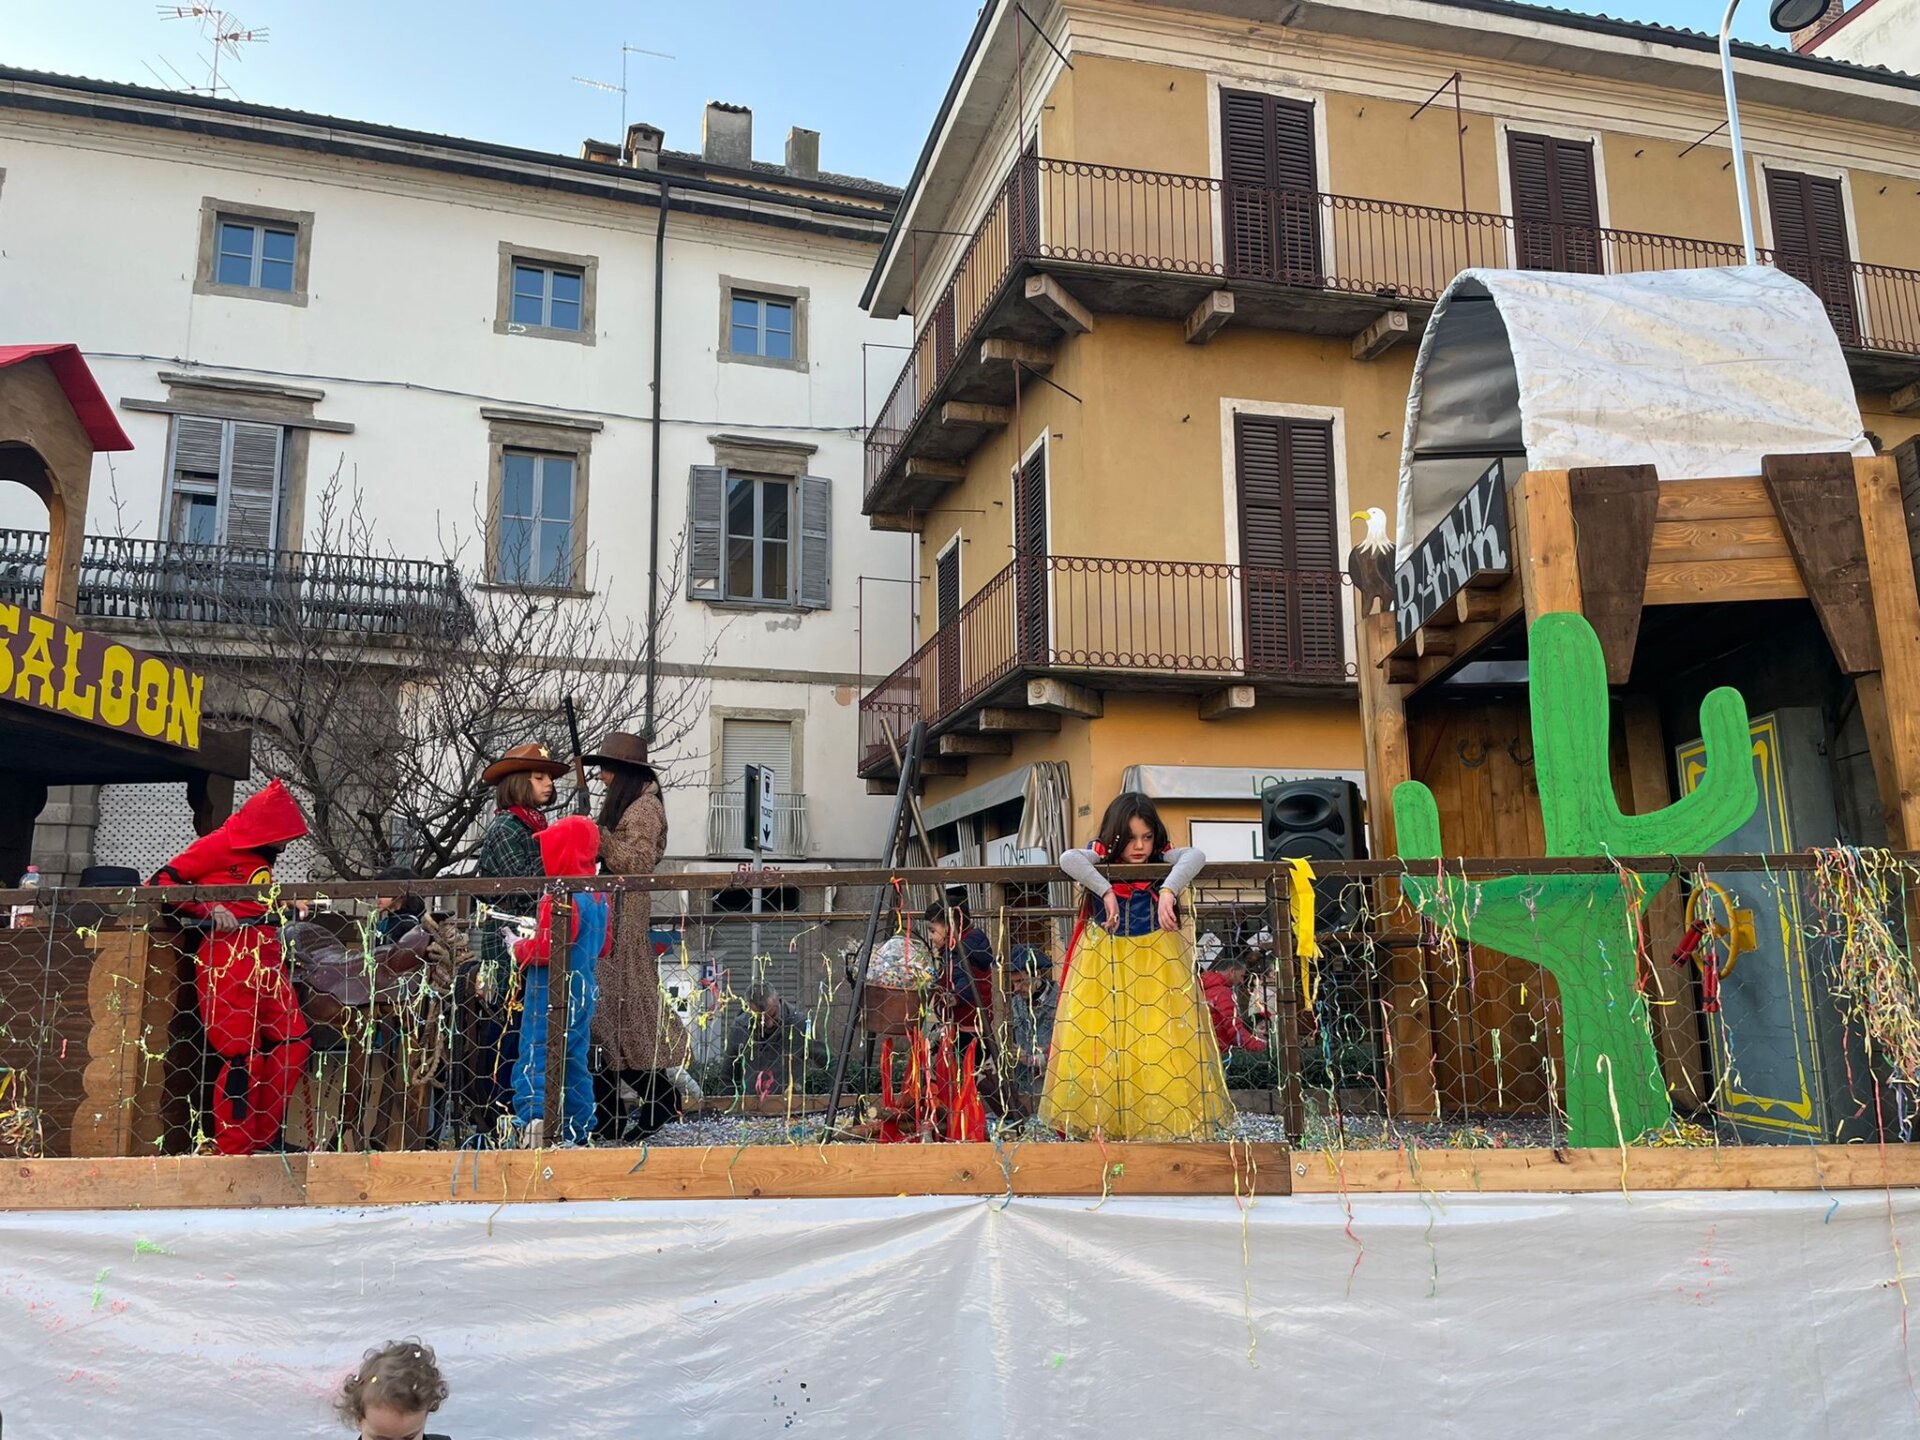 Carnevale in allegria a Cassano d'Adda